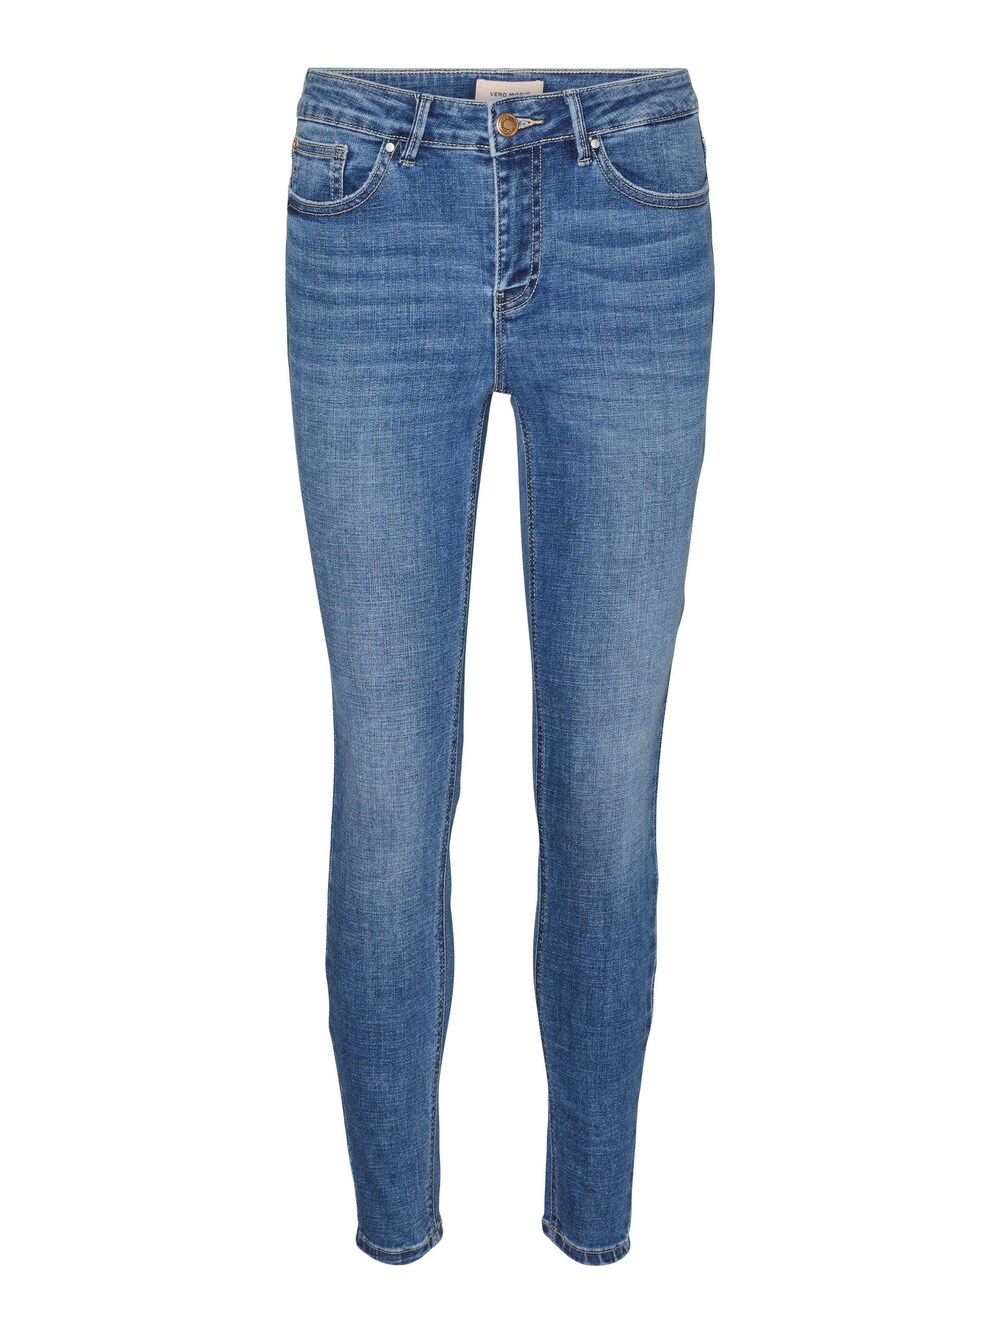 Узкие джинсы Vero Moda Flash, синий